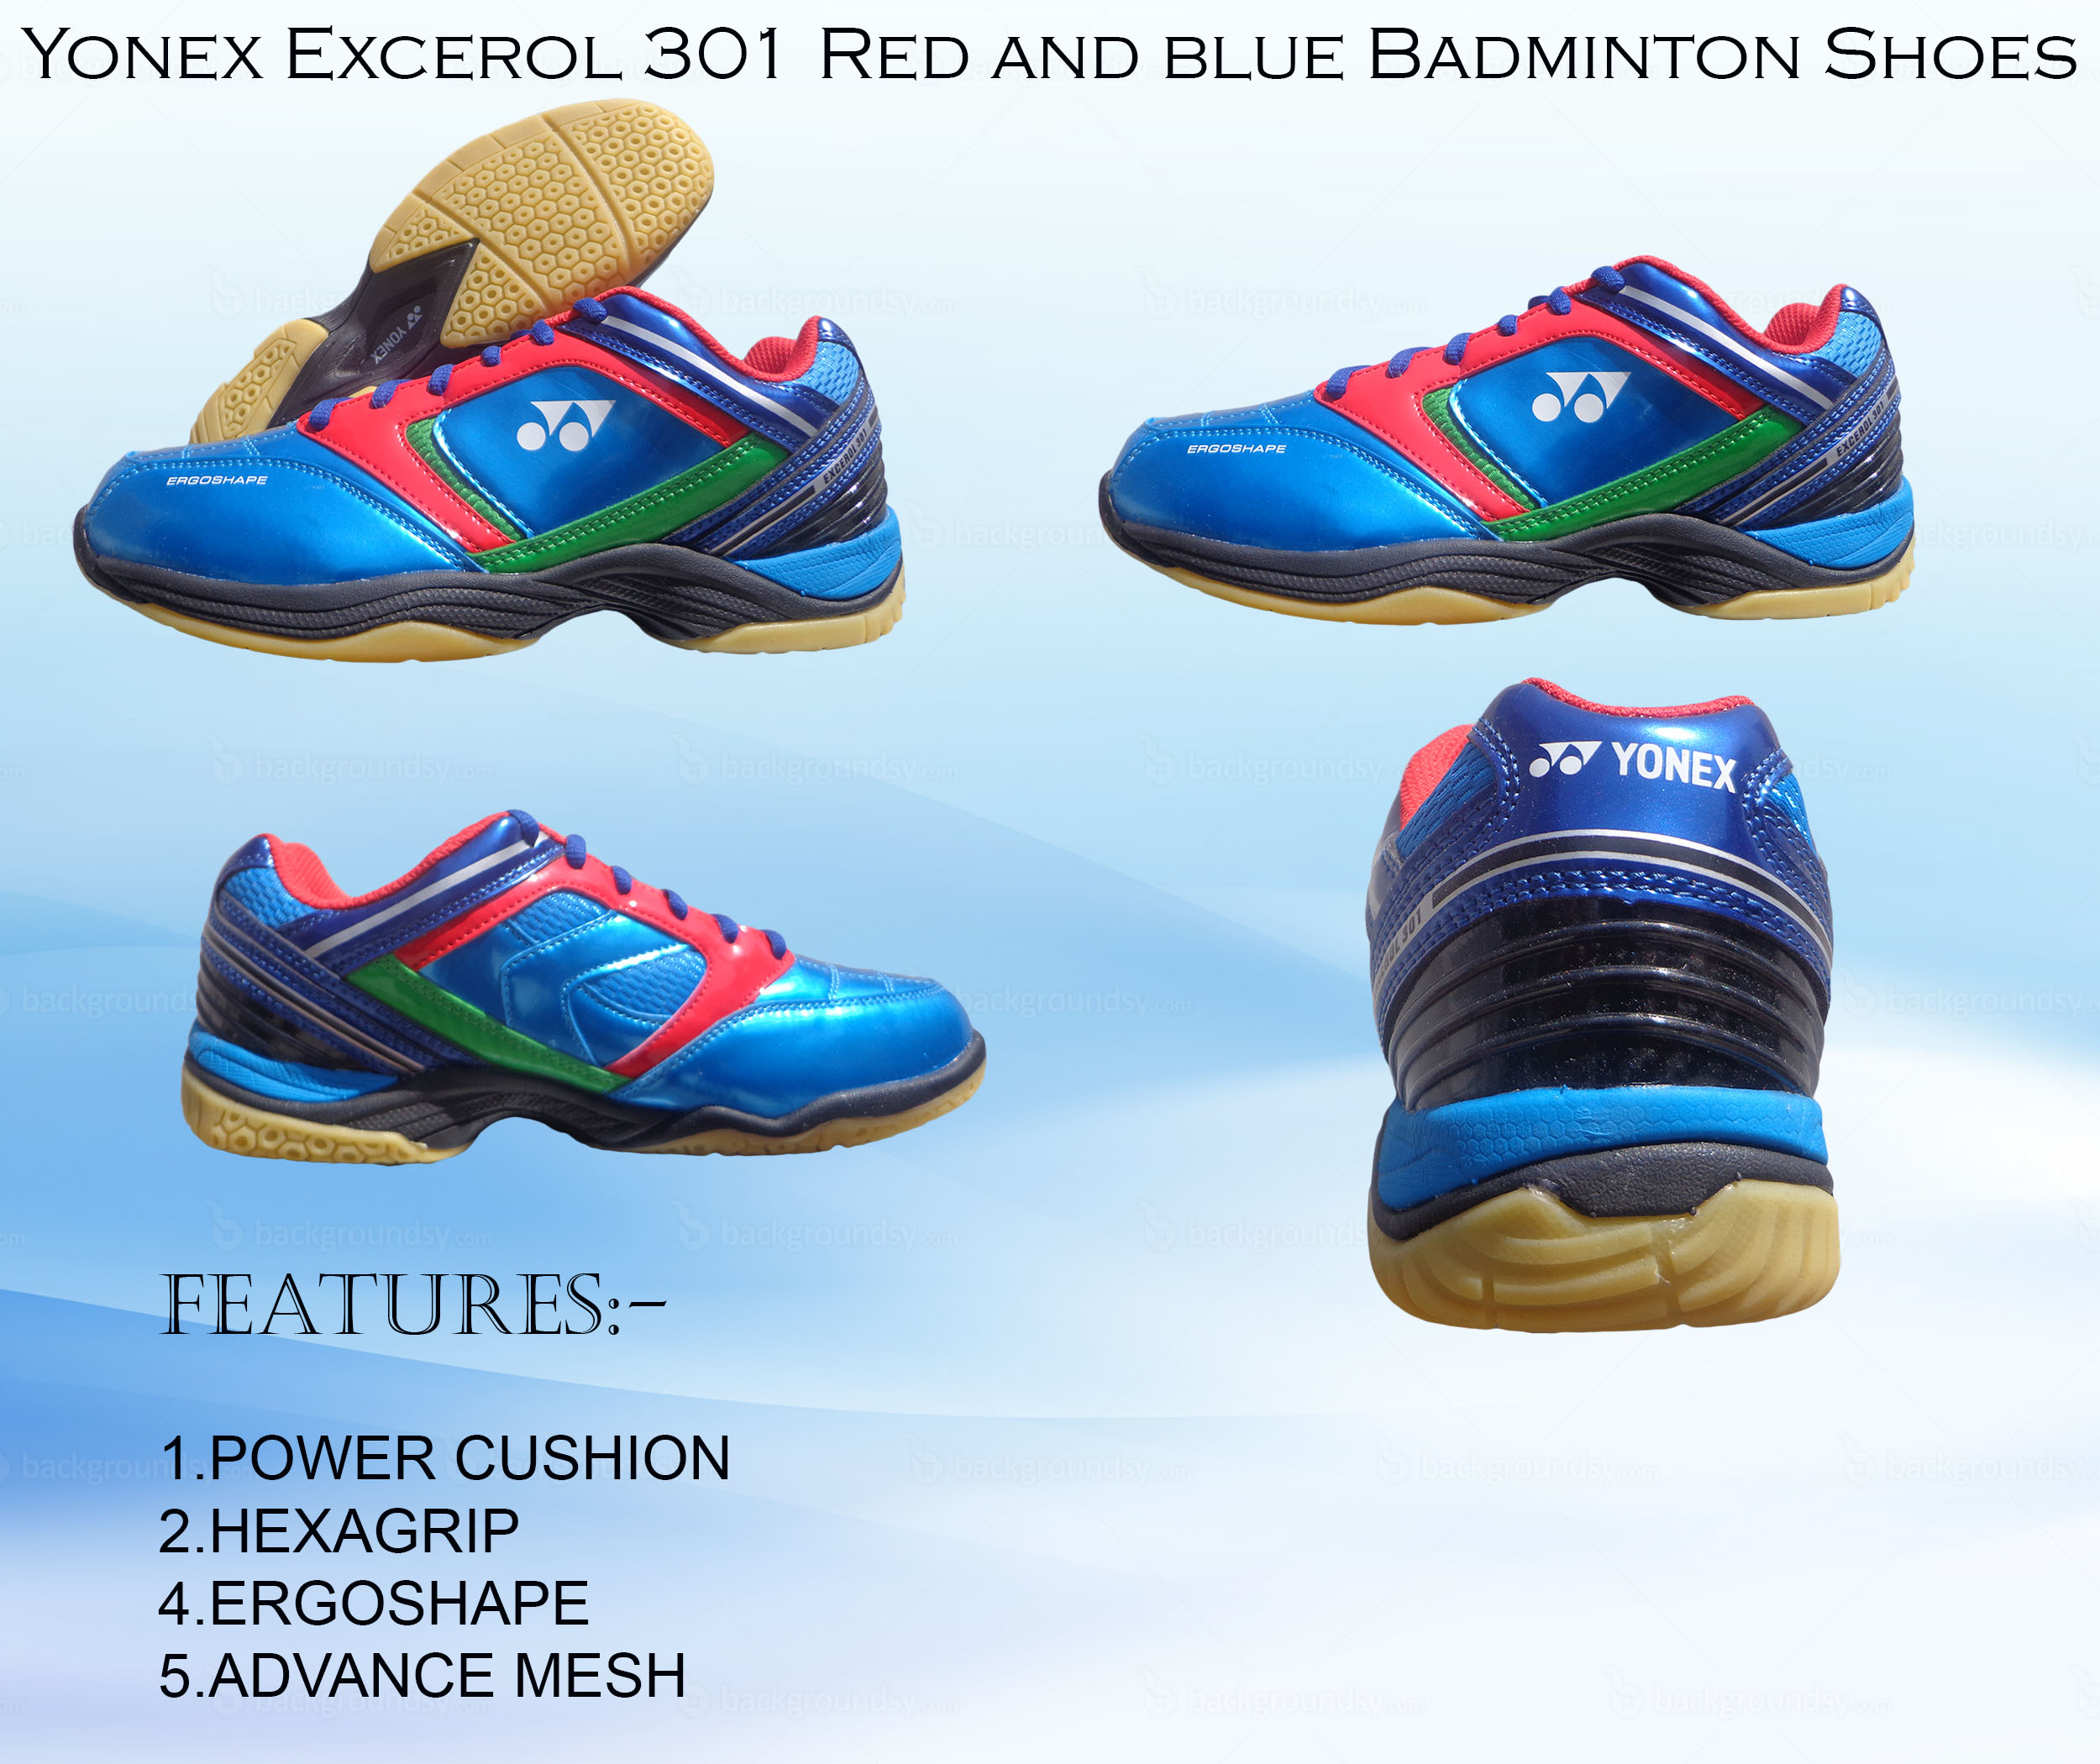 latest badminton shoes